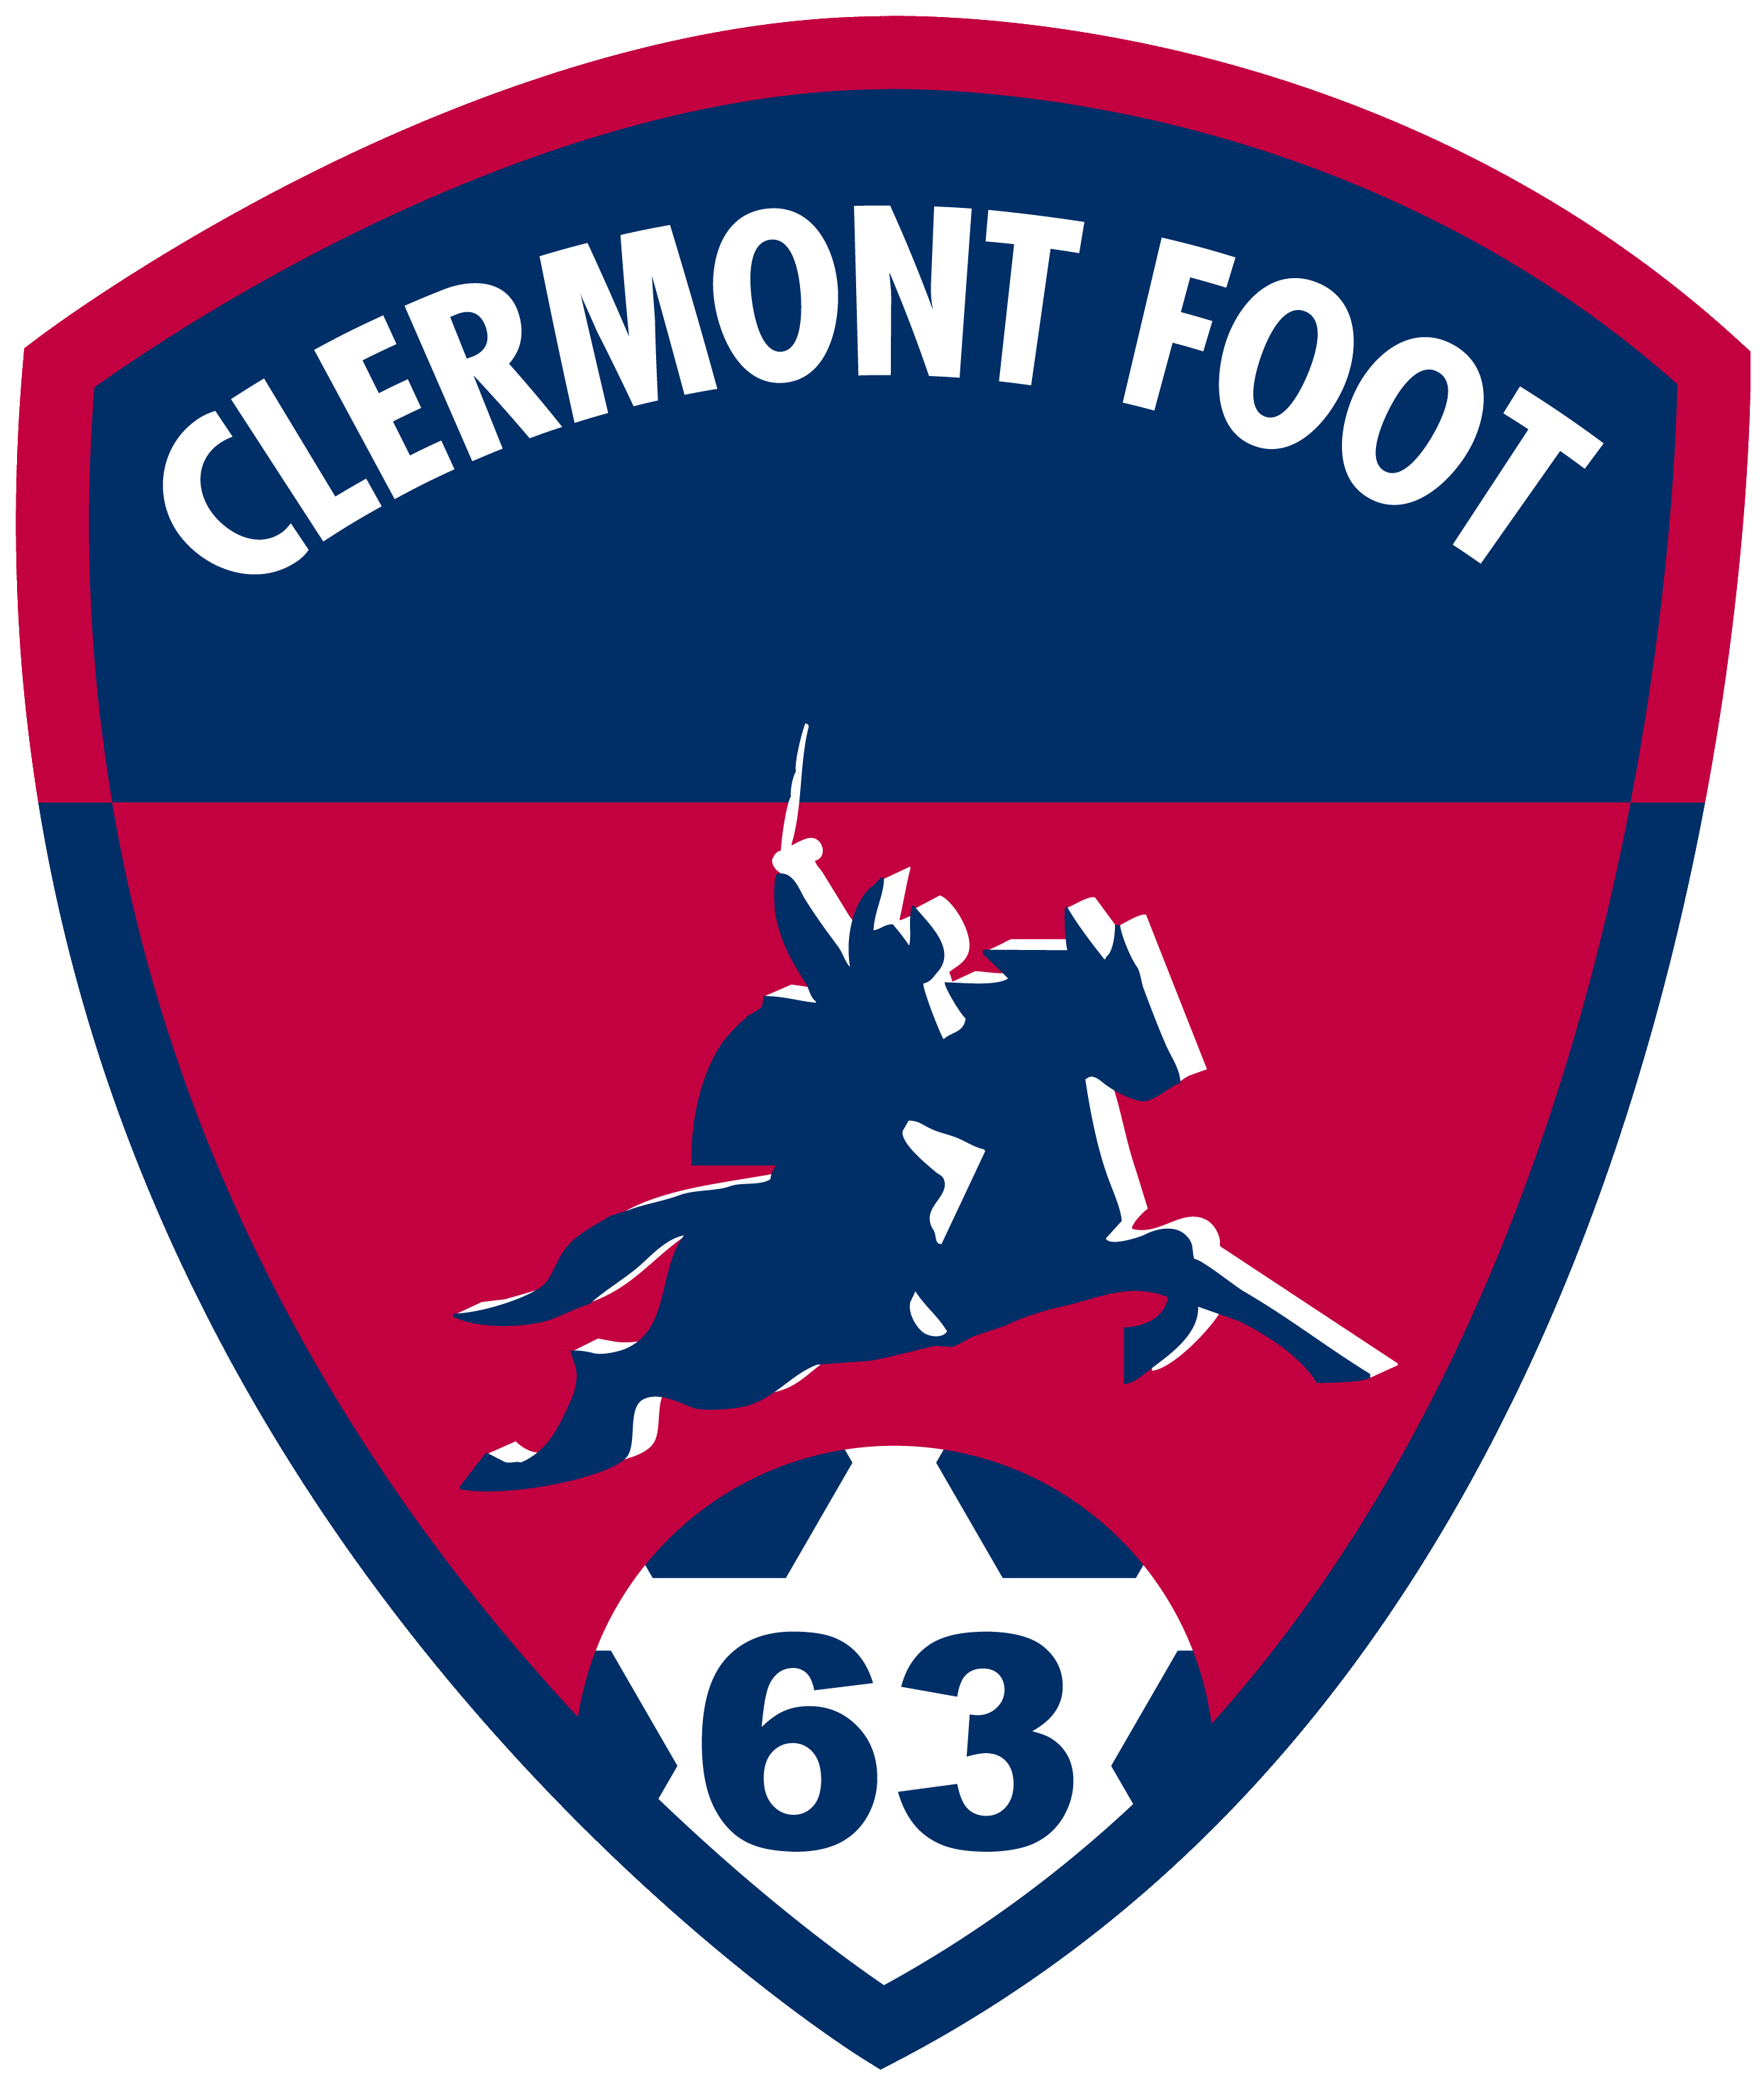 Clermont vs Lyon Pronóstico: los oponentes atravesarán el top de la casa de apuestas sin ningún problema